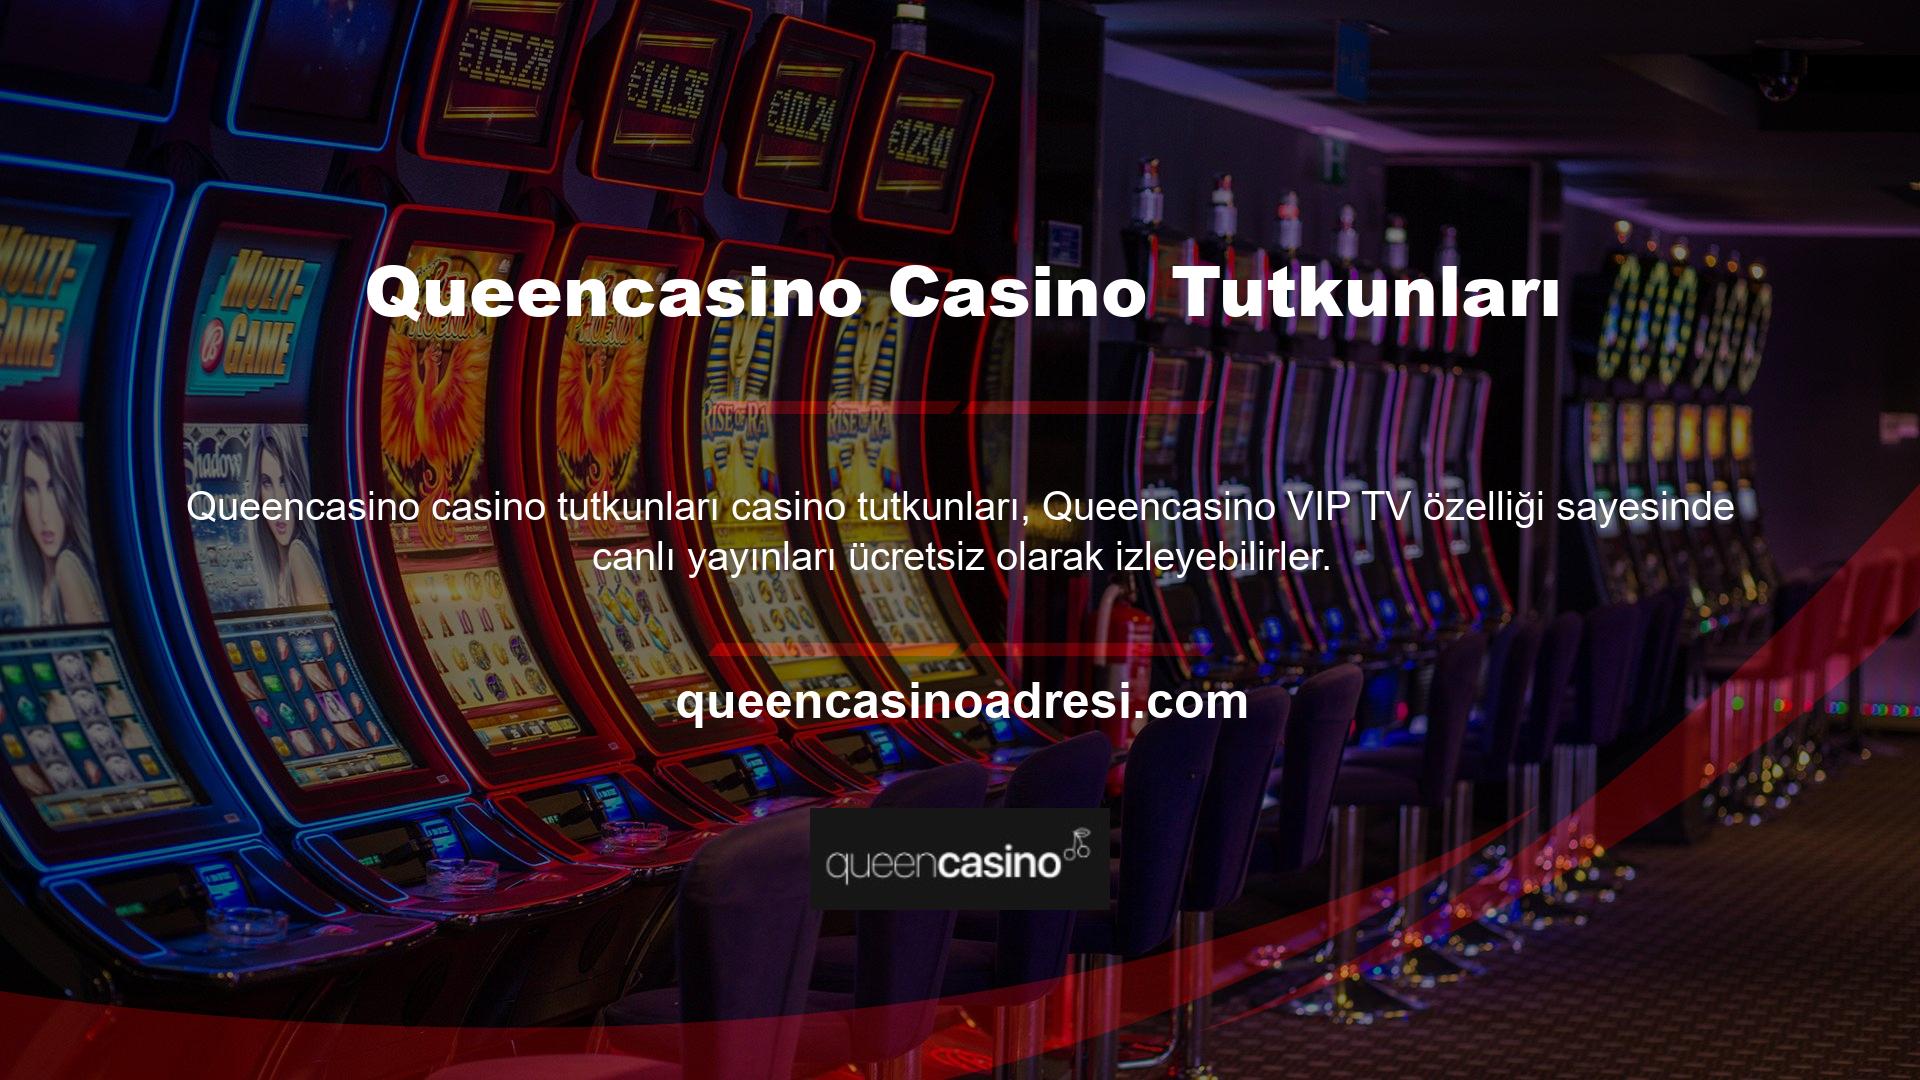 Casino tutkunları, Queencasino VIP TV özelliği sayesinde canlı yayınları ücretsiz olarak izleyebilirler